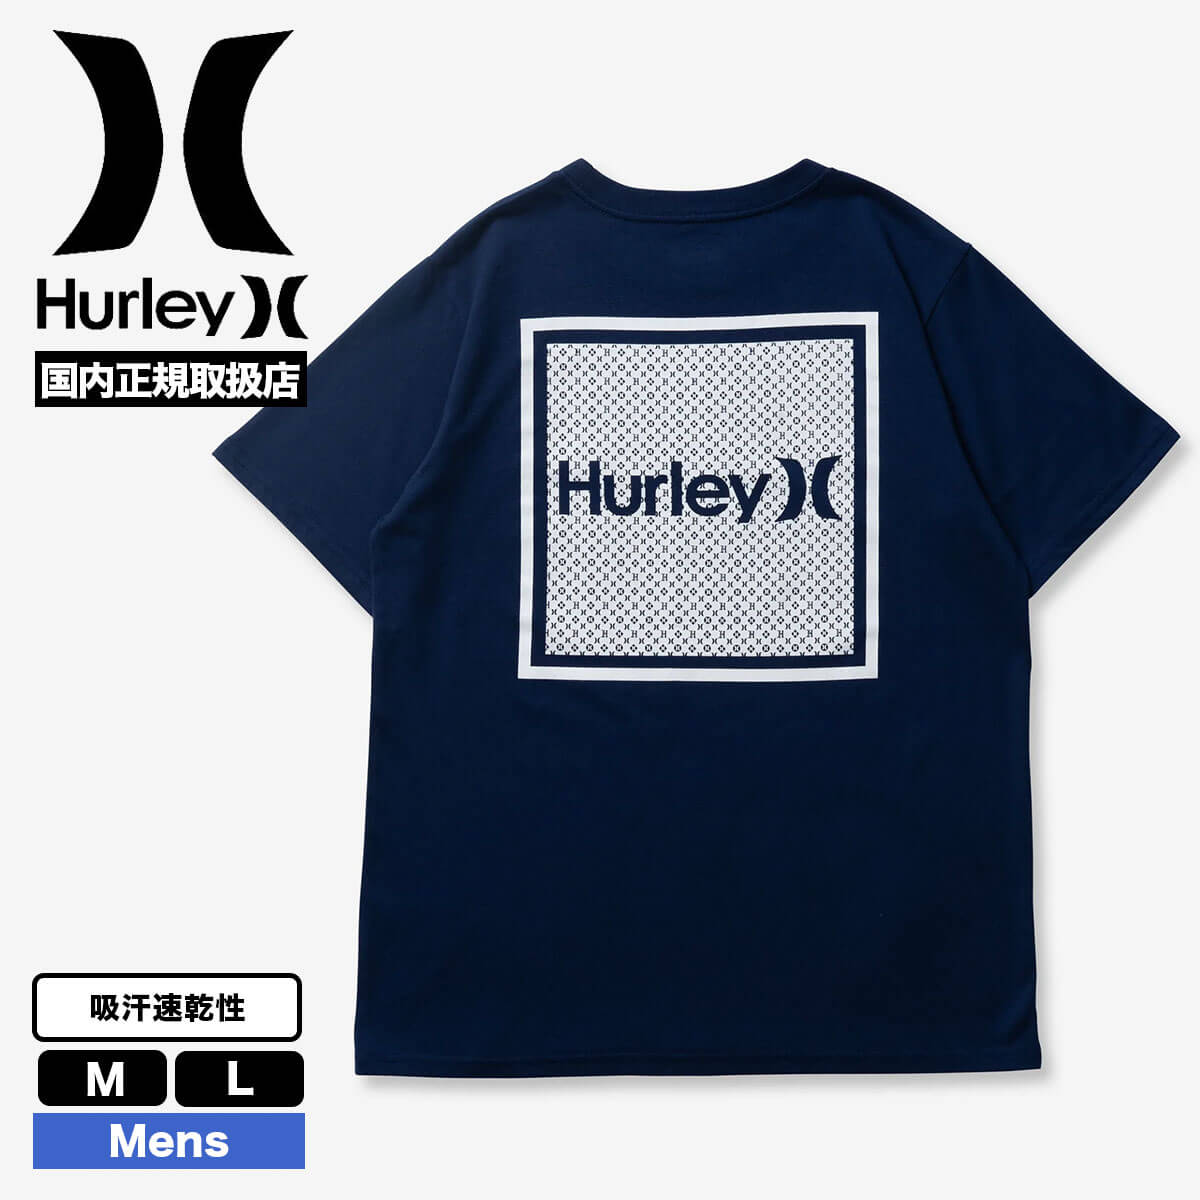 HURLEY ハーレー メンズ 半袖Tシャツ トップス カットソー ティーシャツ サイズ M L 人...